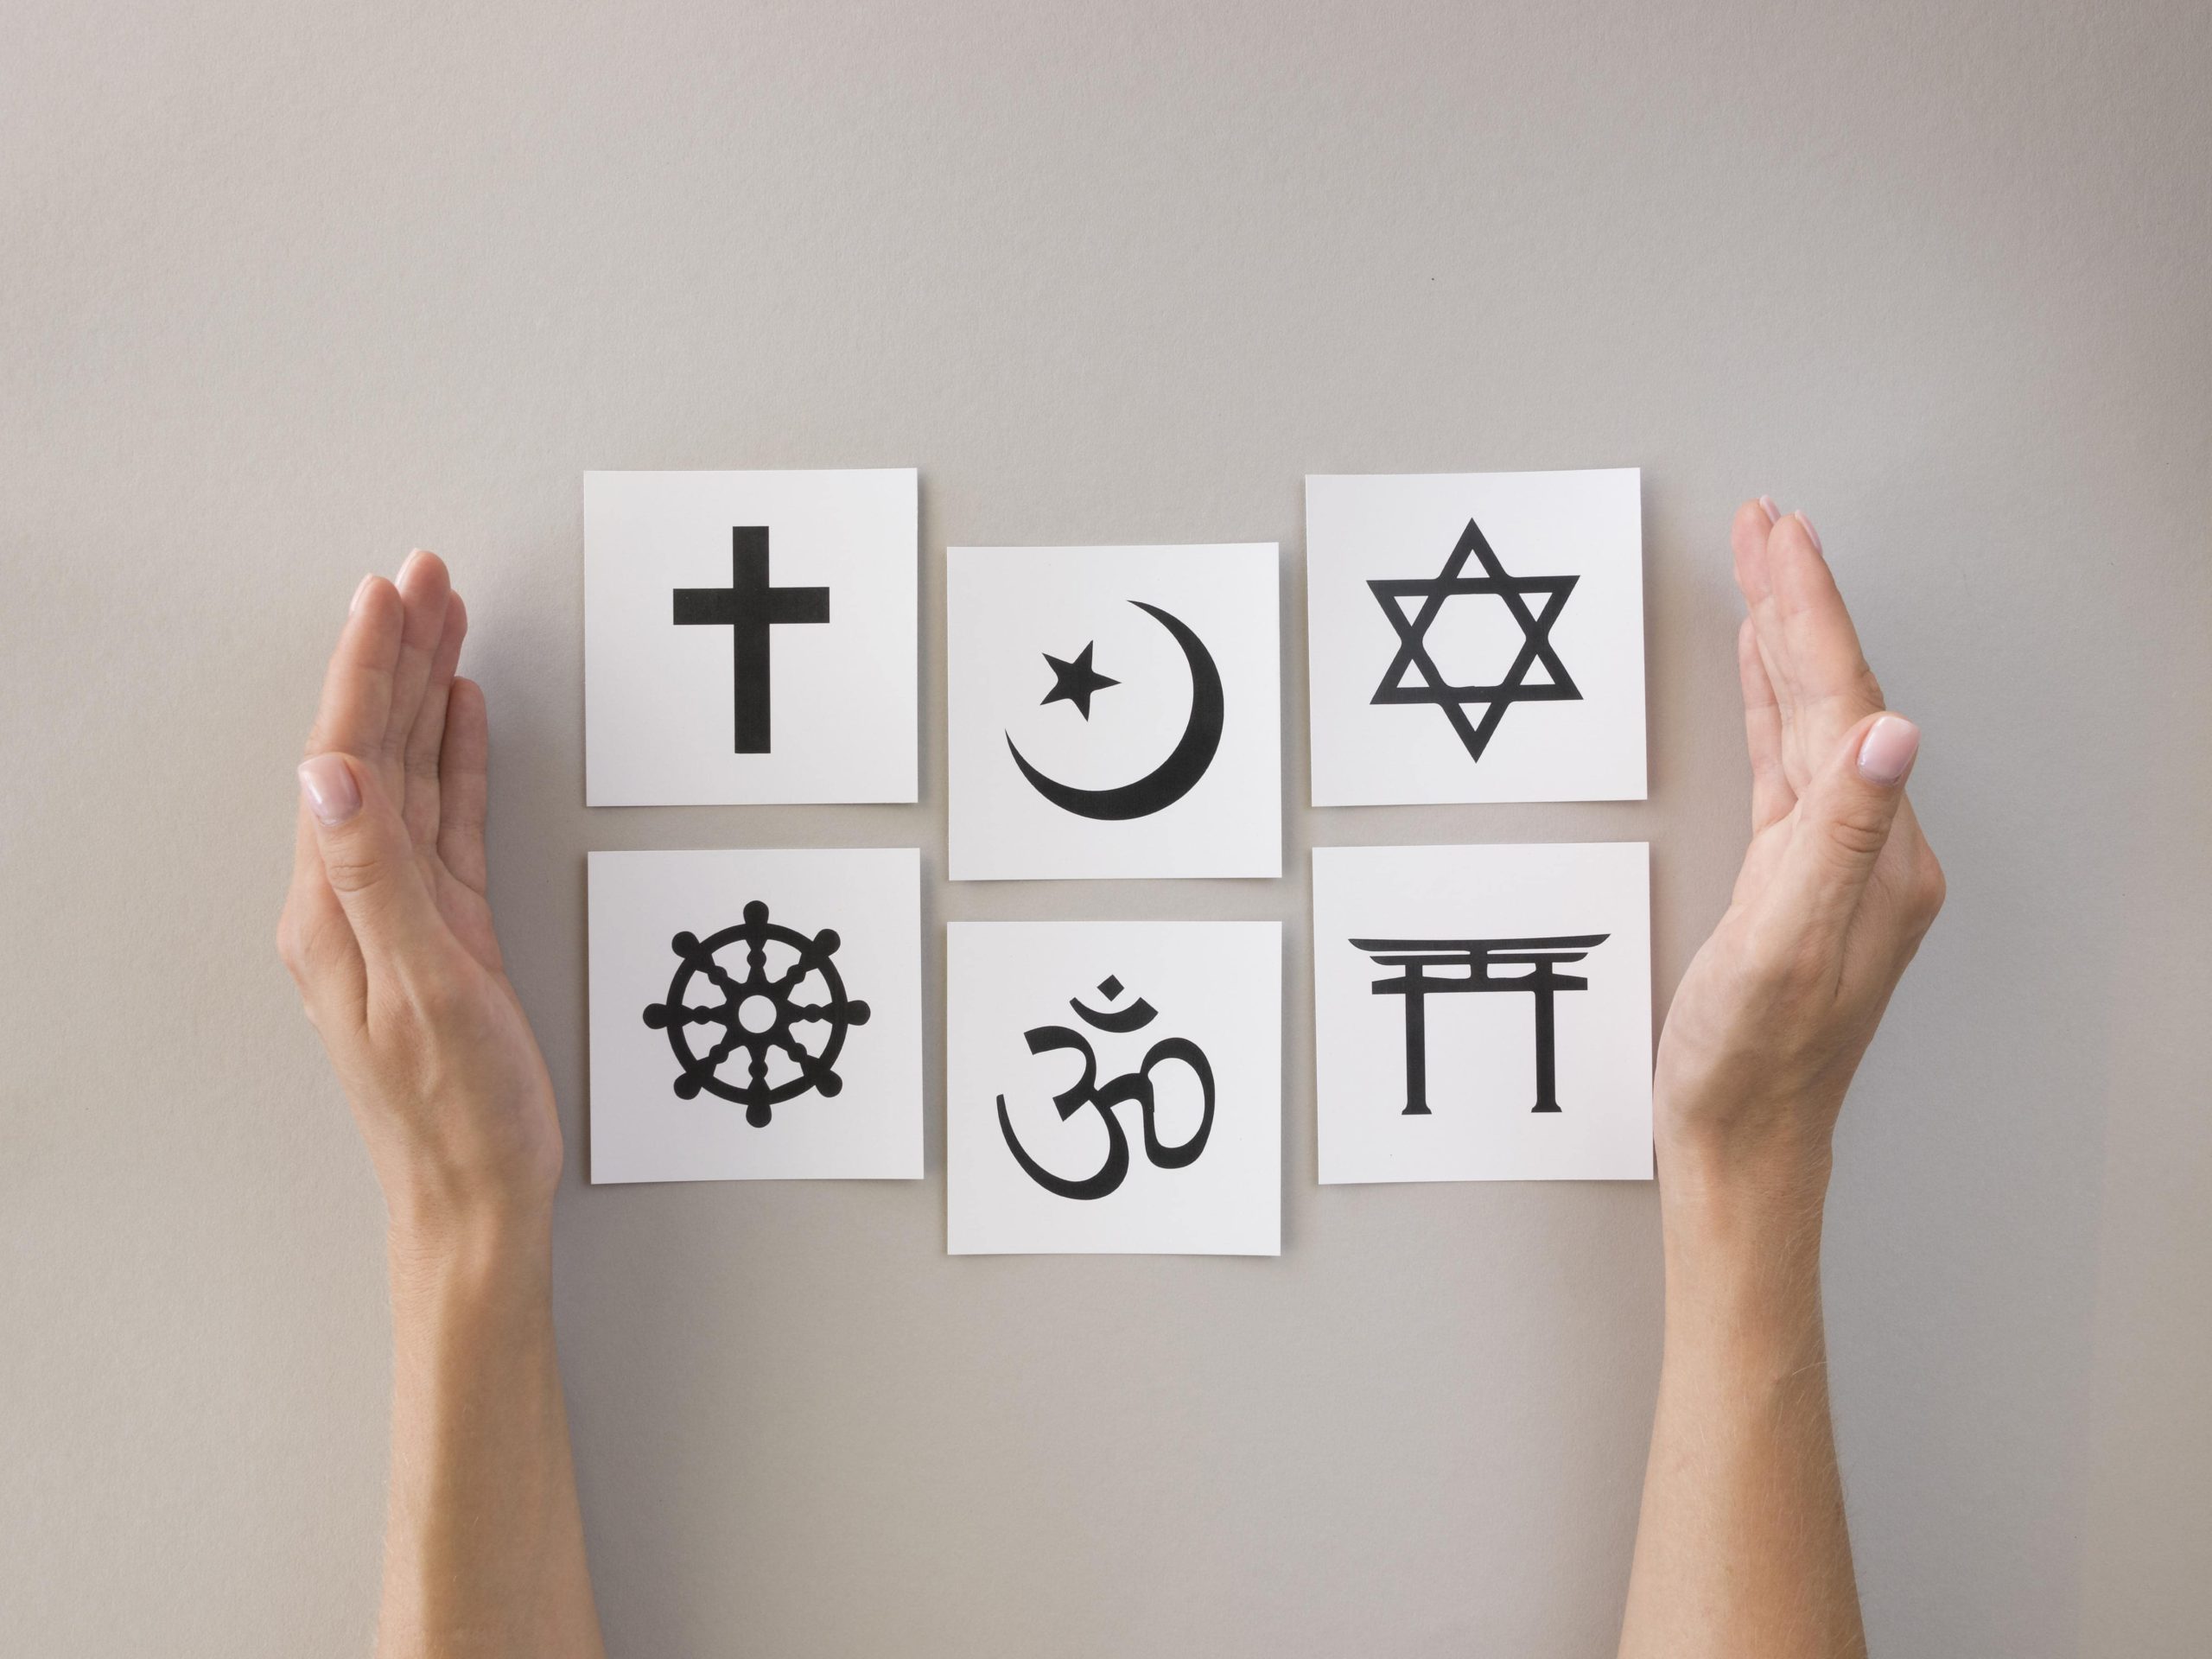 Mãos unem papéis com símbolos de religiões diversas - espiritualidade